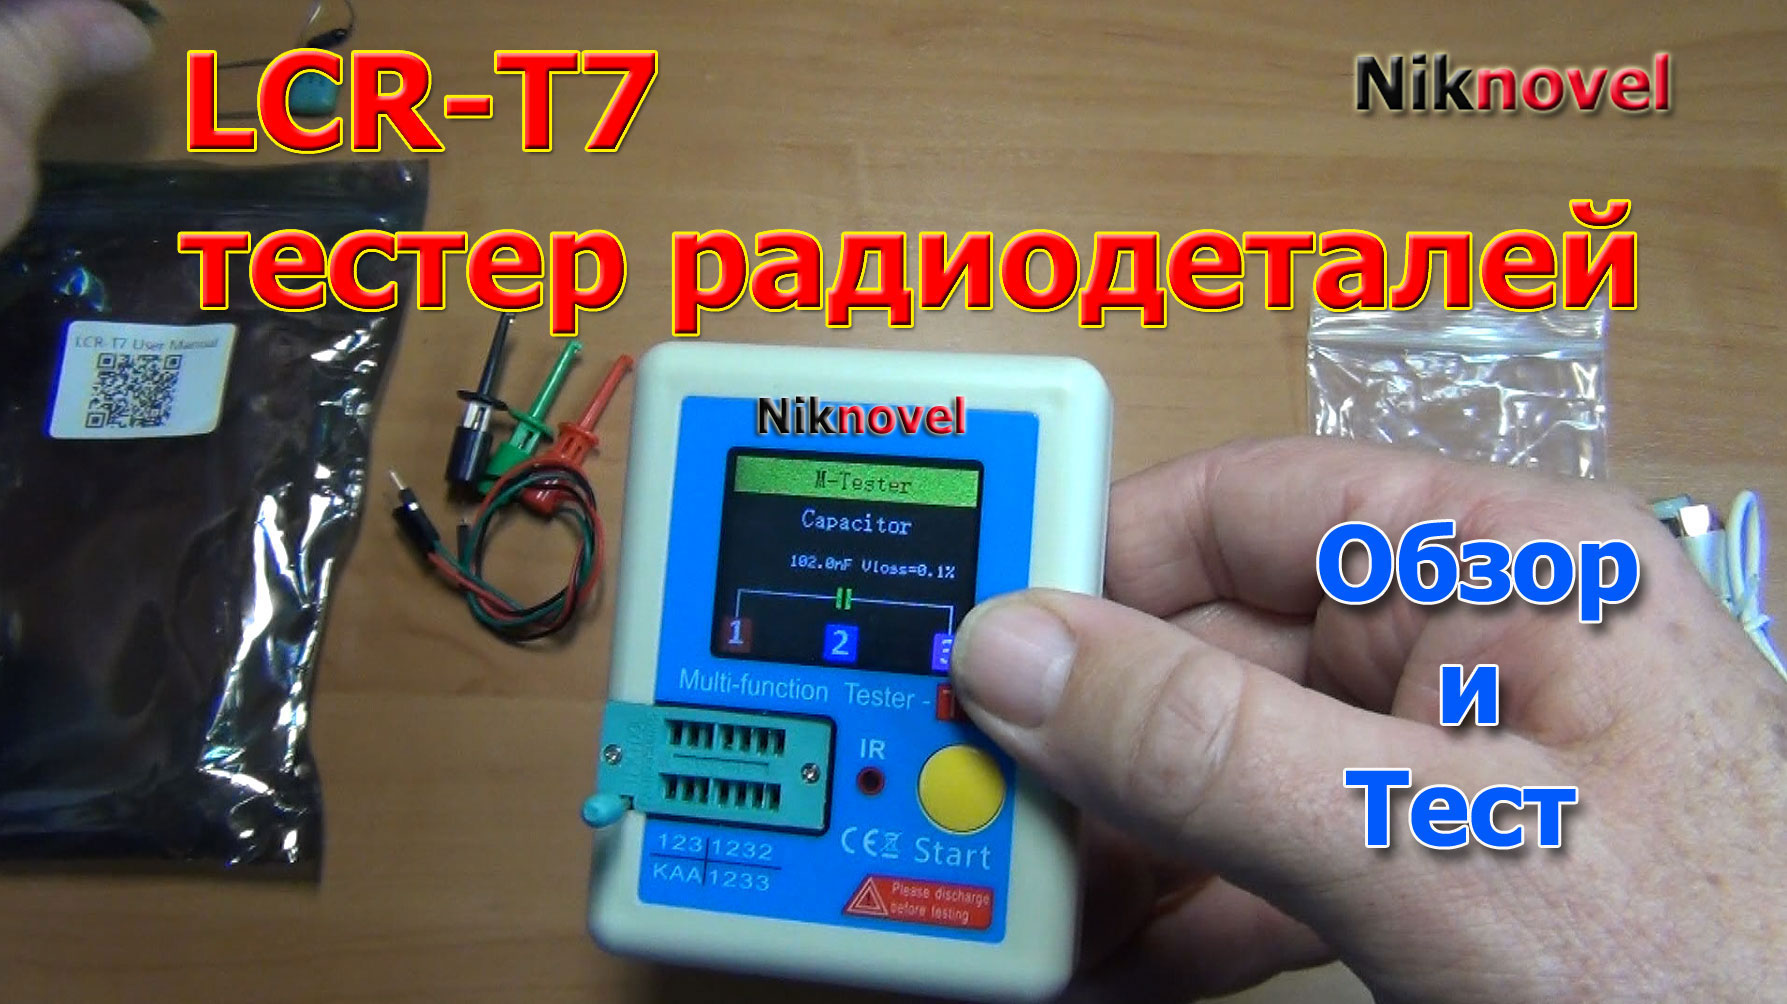 LCR-T7, LCR-TC1 тестер радиодеталей (радиокомпонентов). Обзор и тест.